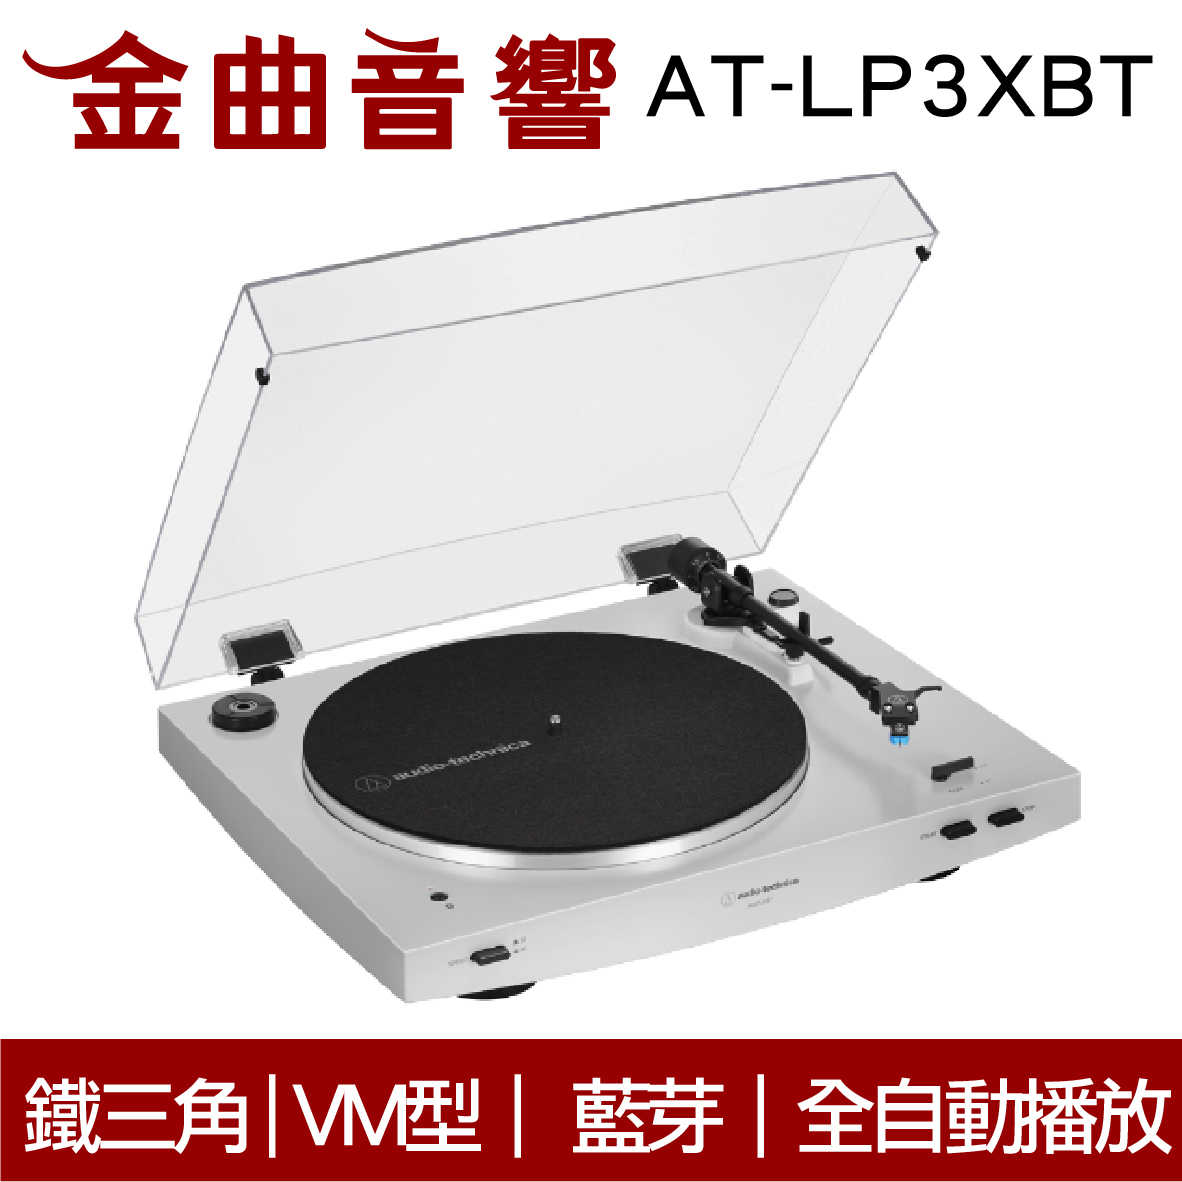 鐵三角 AT-LP3XBT 白色 全自動 無線 藍牙 黑膠唱盤 | 金曲音響